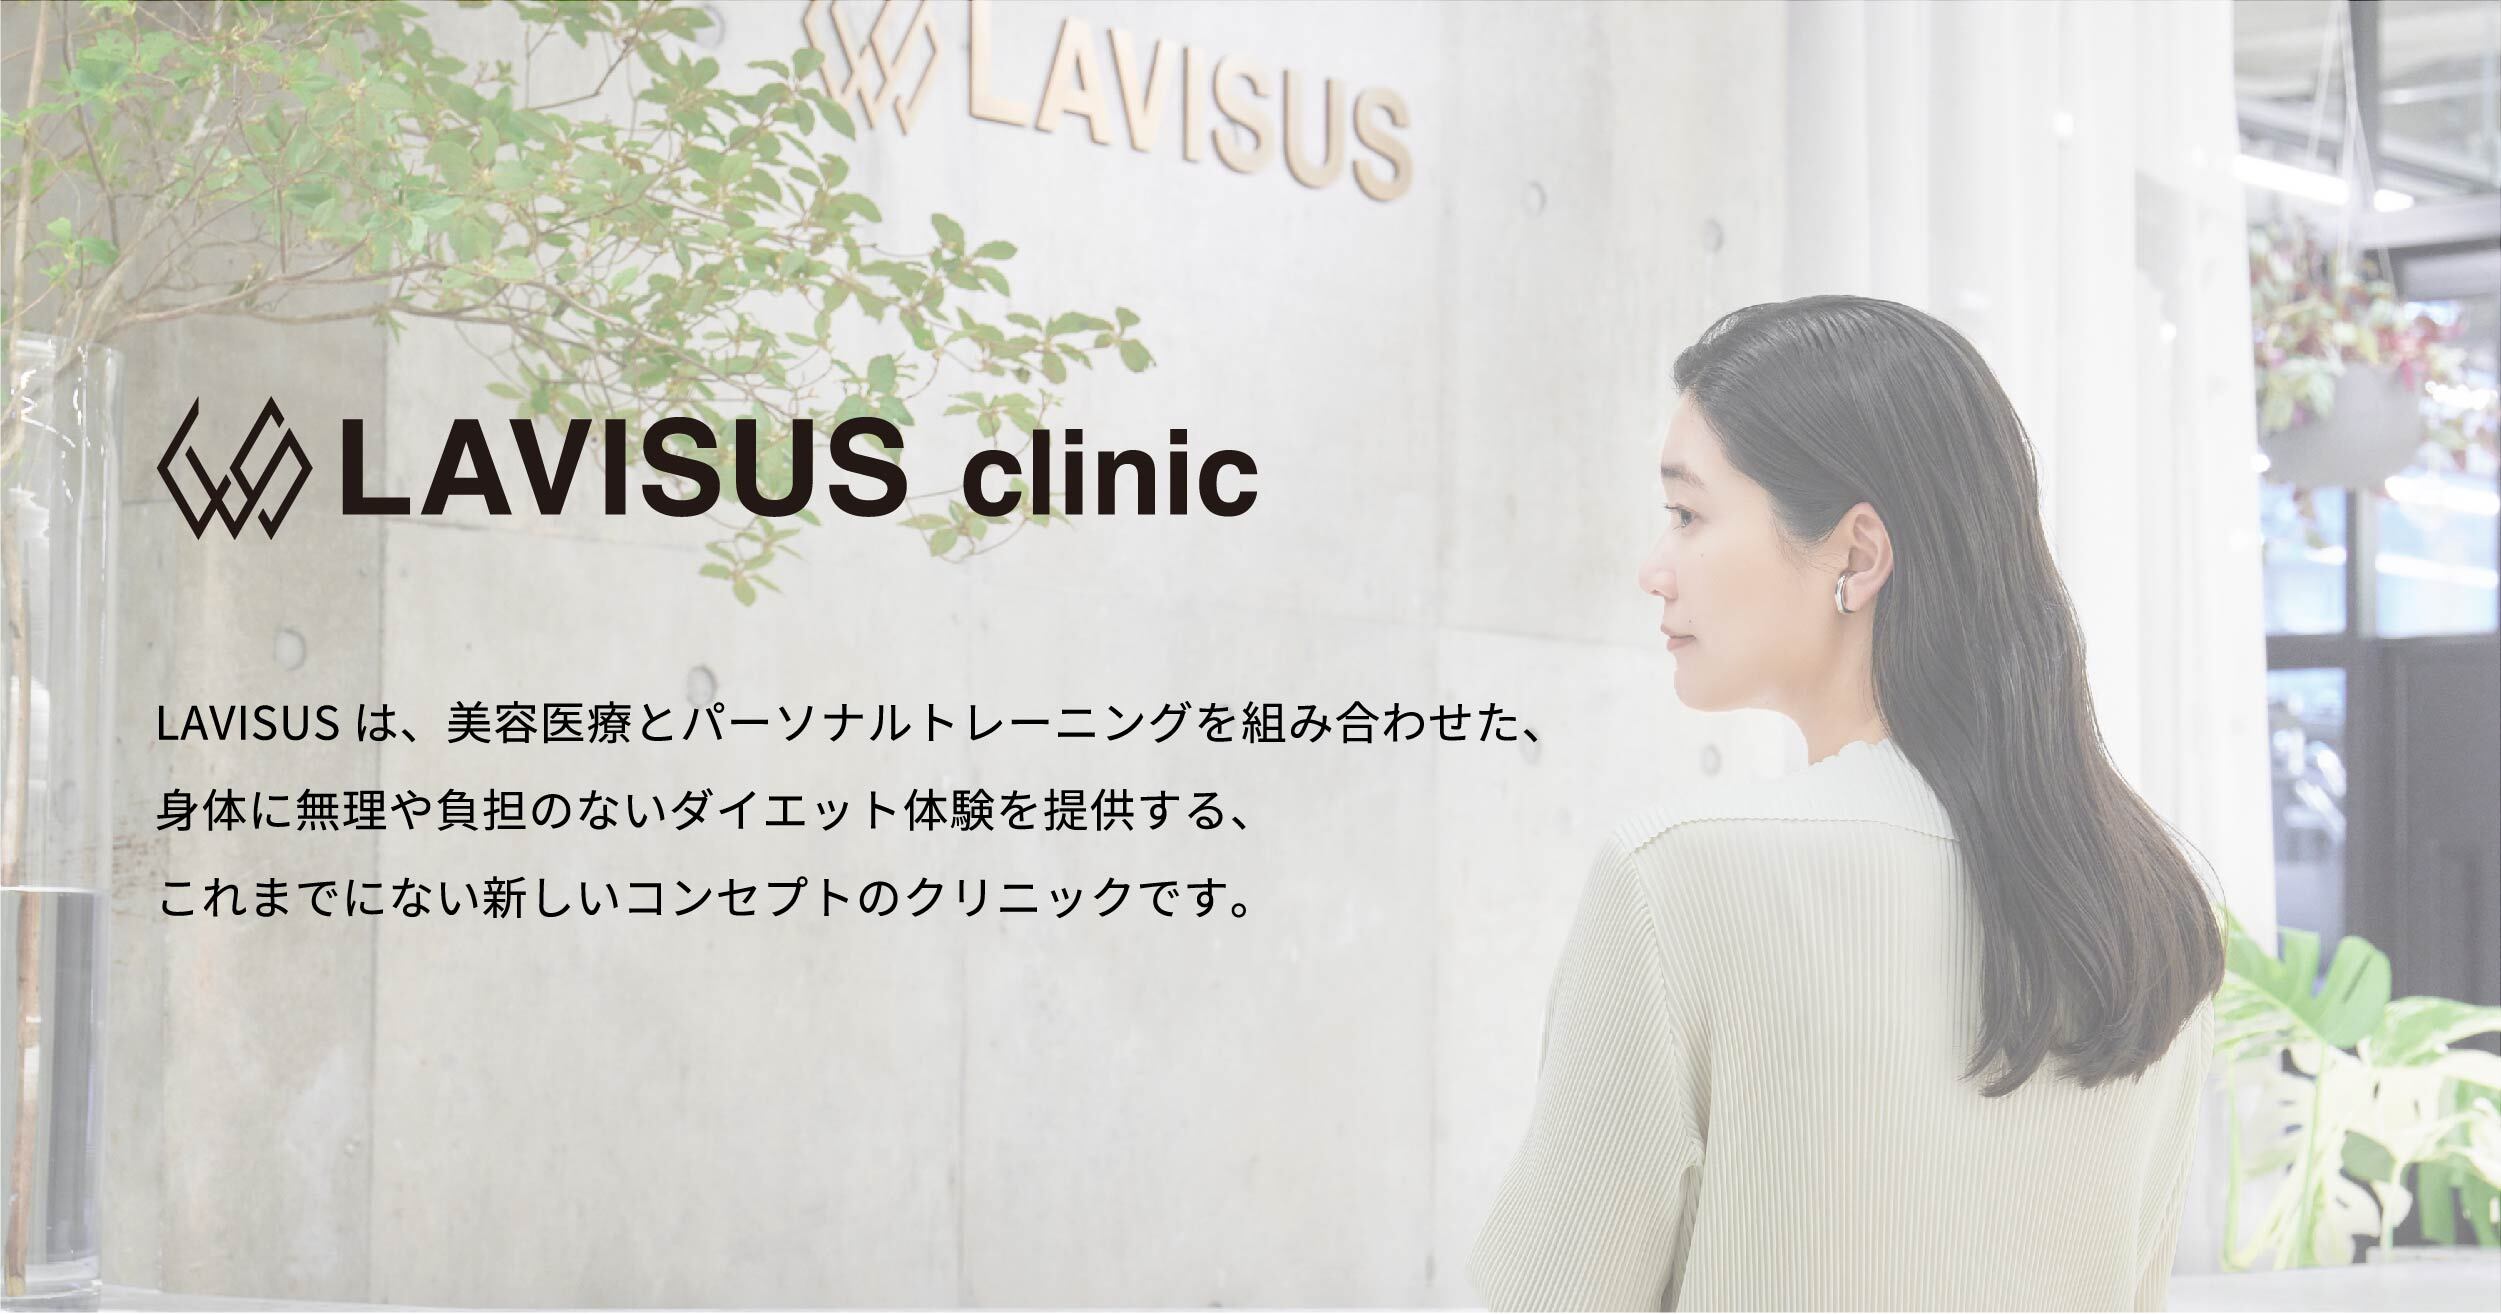 LAVISUS clinicブログ始めました！